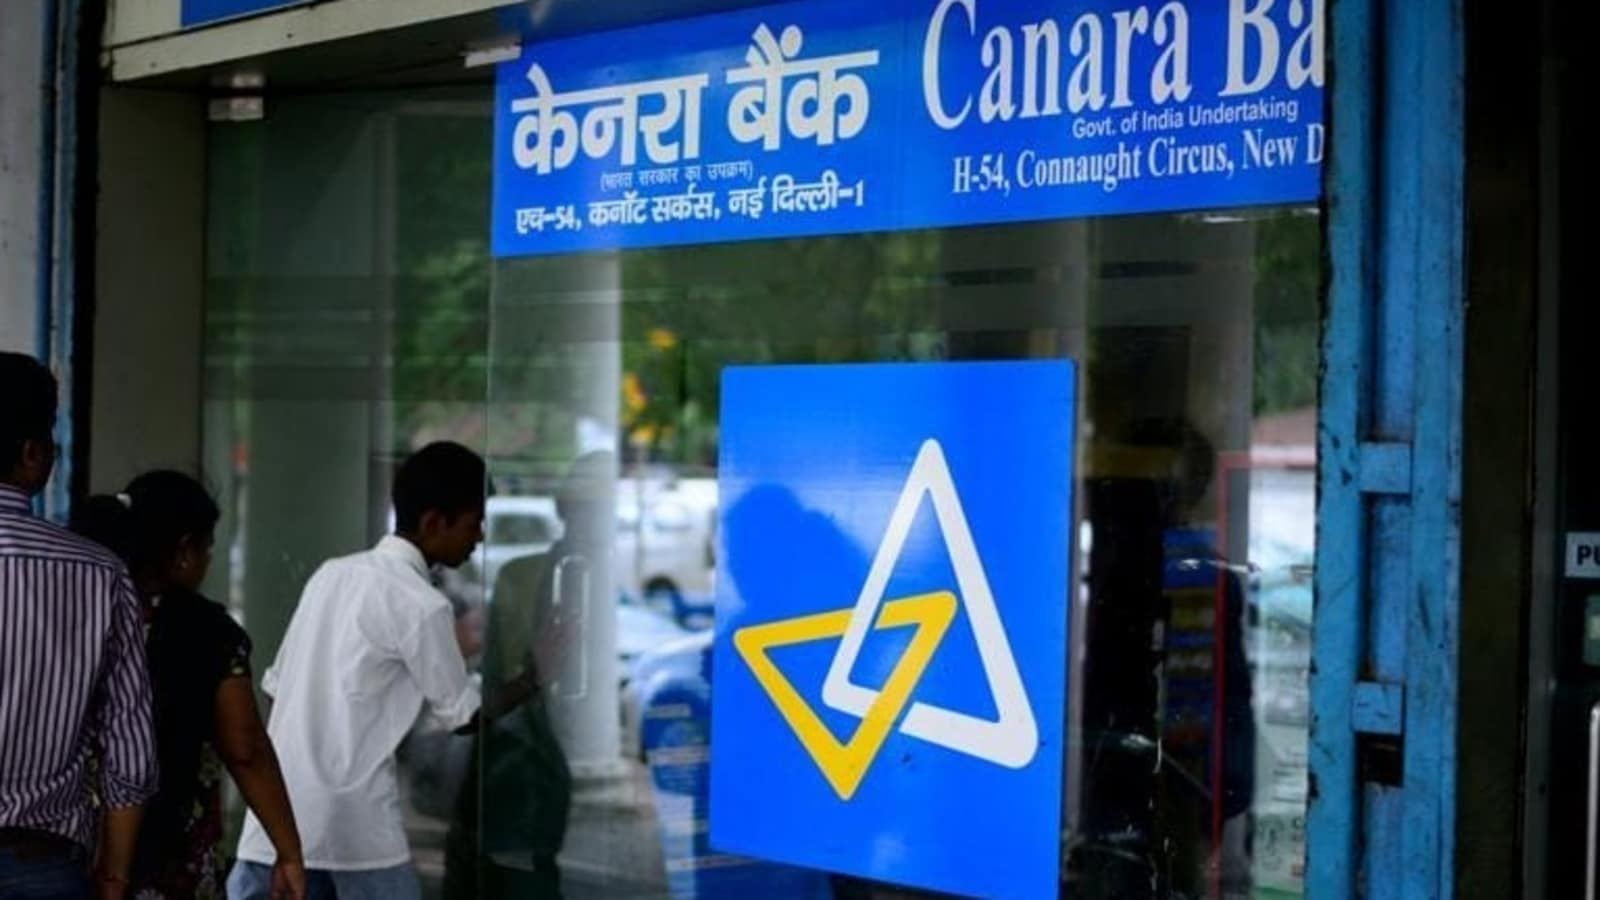 Canara Bank Q1 results: जून तिमाही महीने के नतीजे जारी, नेट प्रॉफिट में 74.8% बढ़ोतरी के साथ ऐसेट क्वालिटी में सुधार।